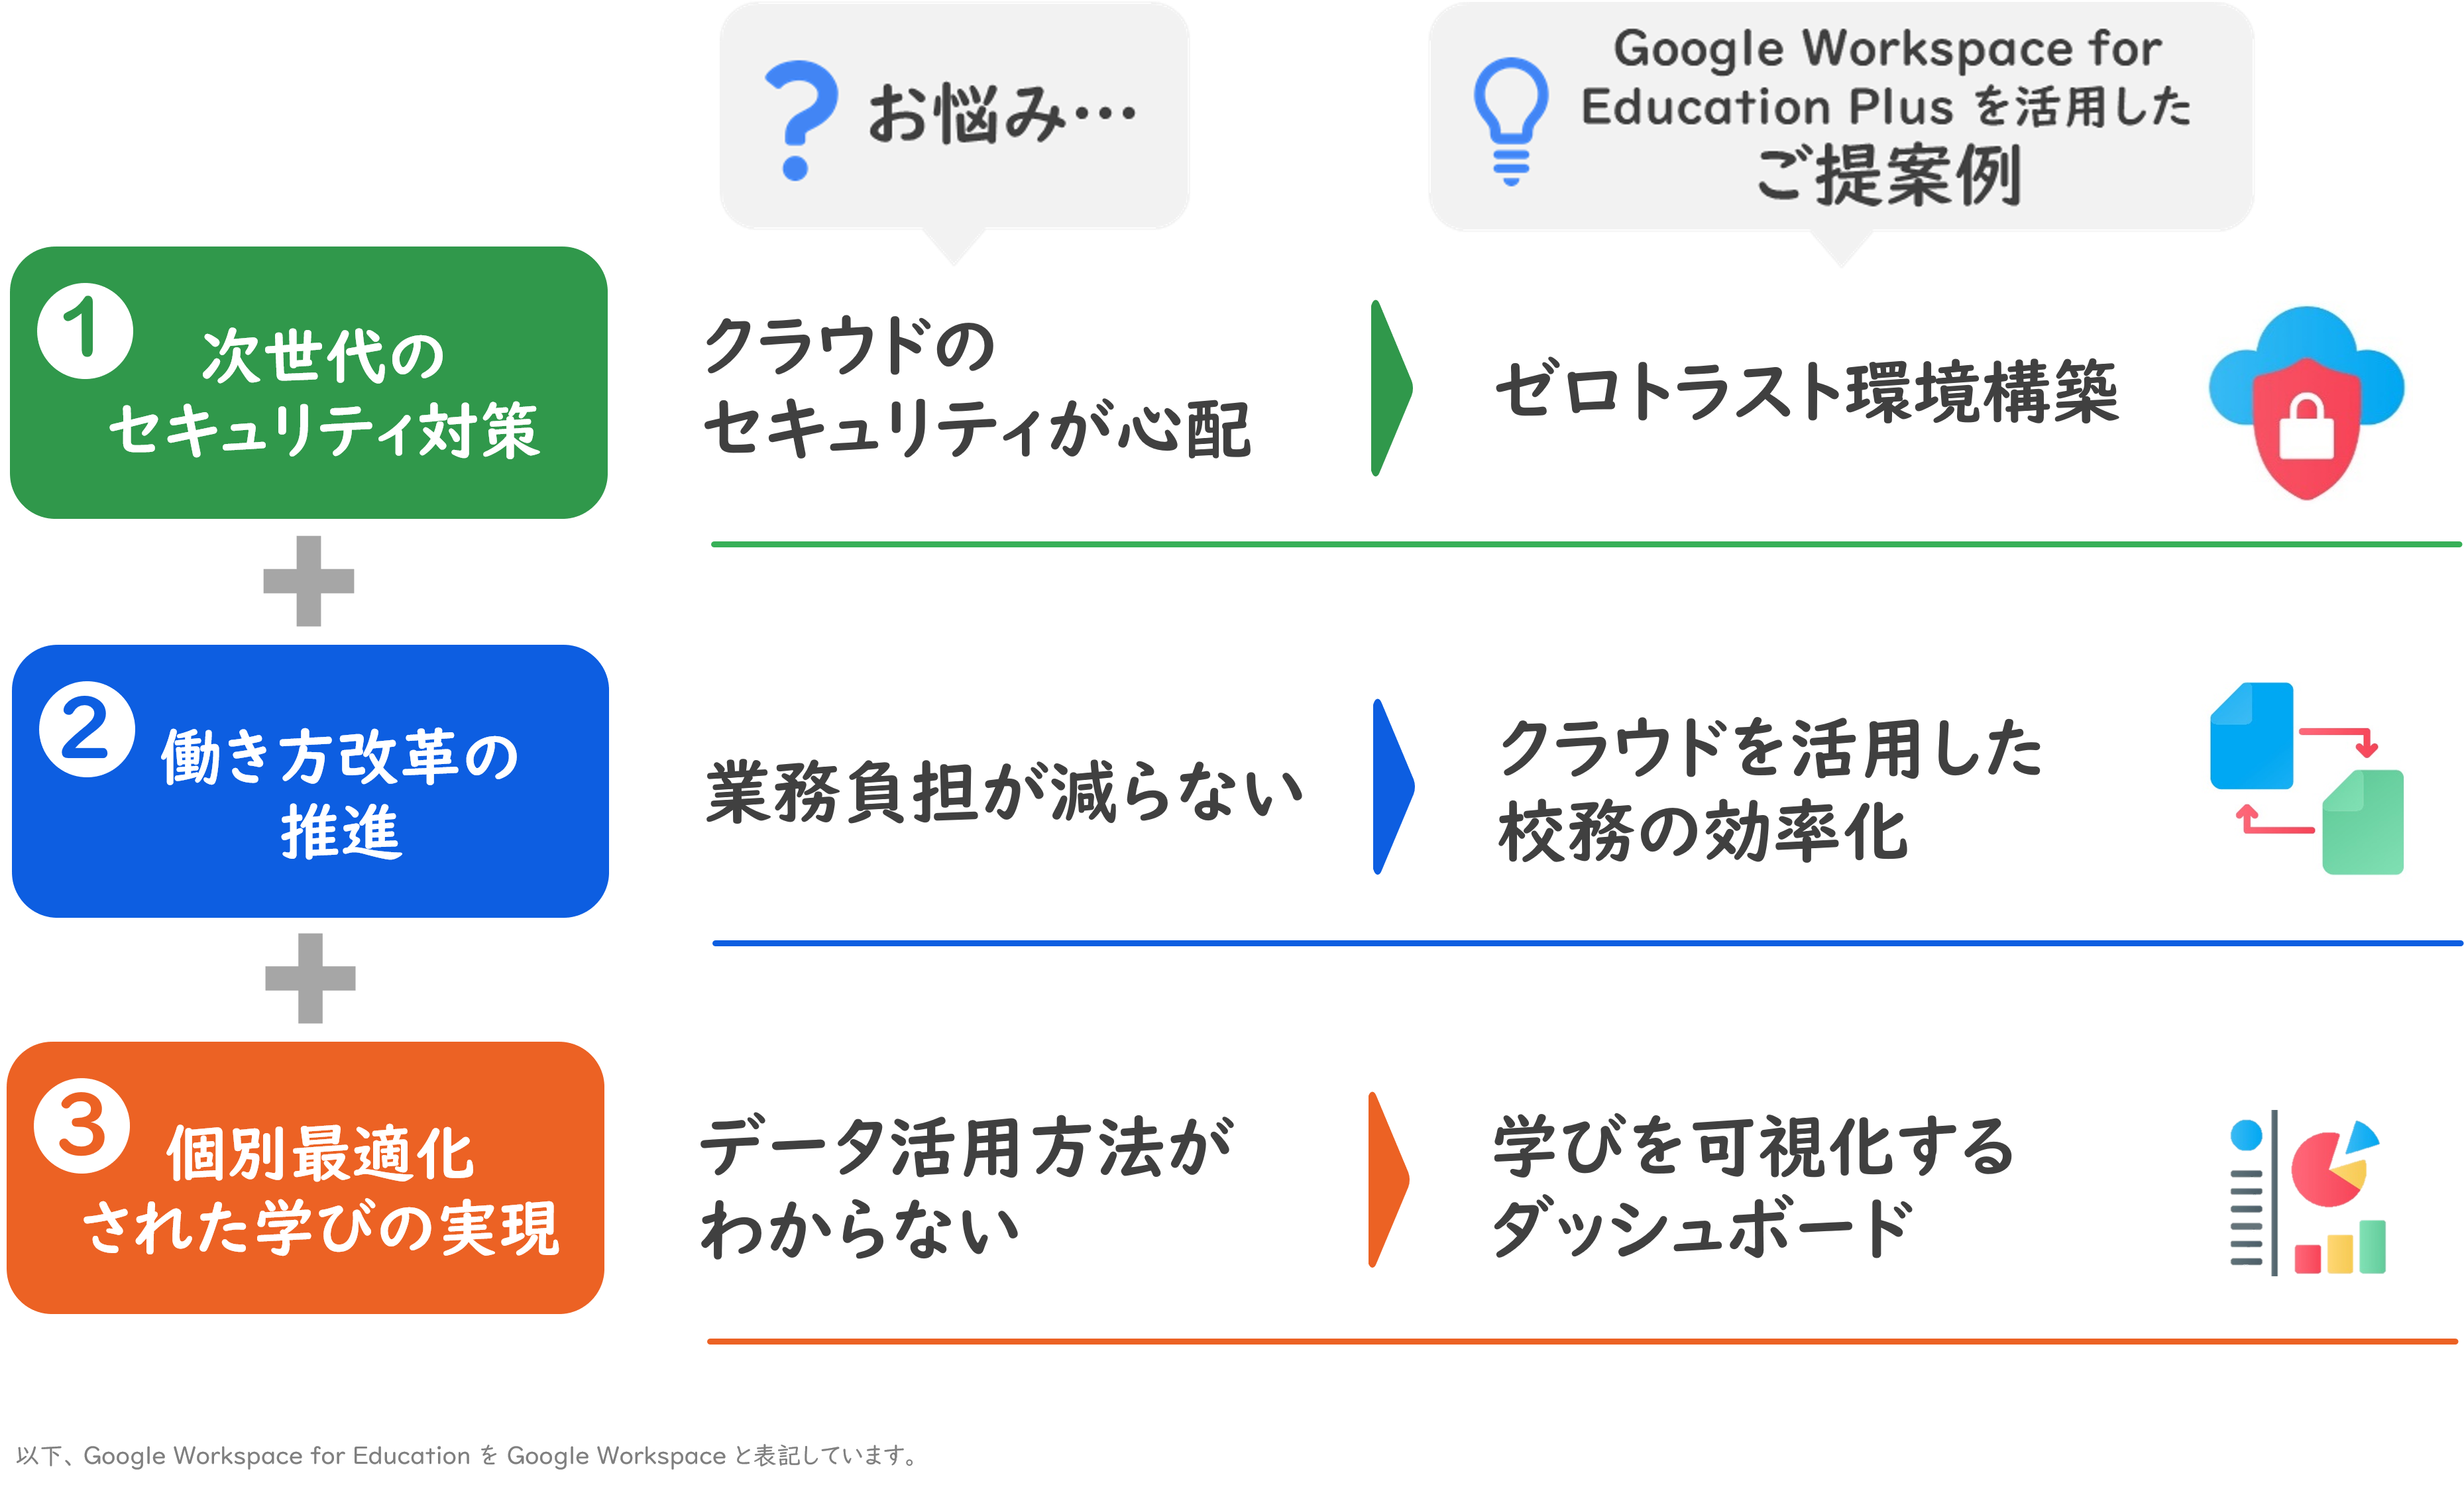 お悩みに対する「Google Workspace for Education Plus」を活用したご提案事例